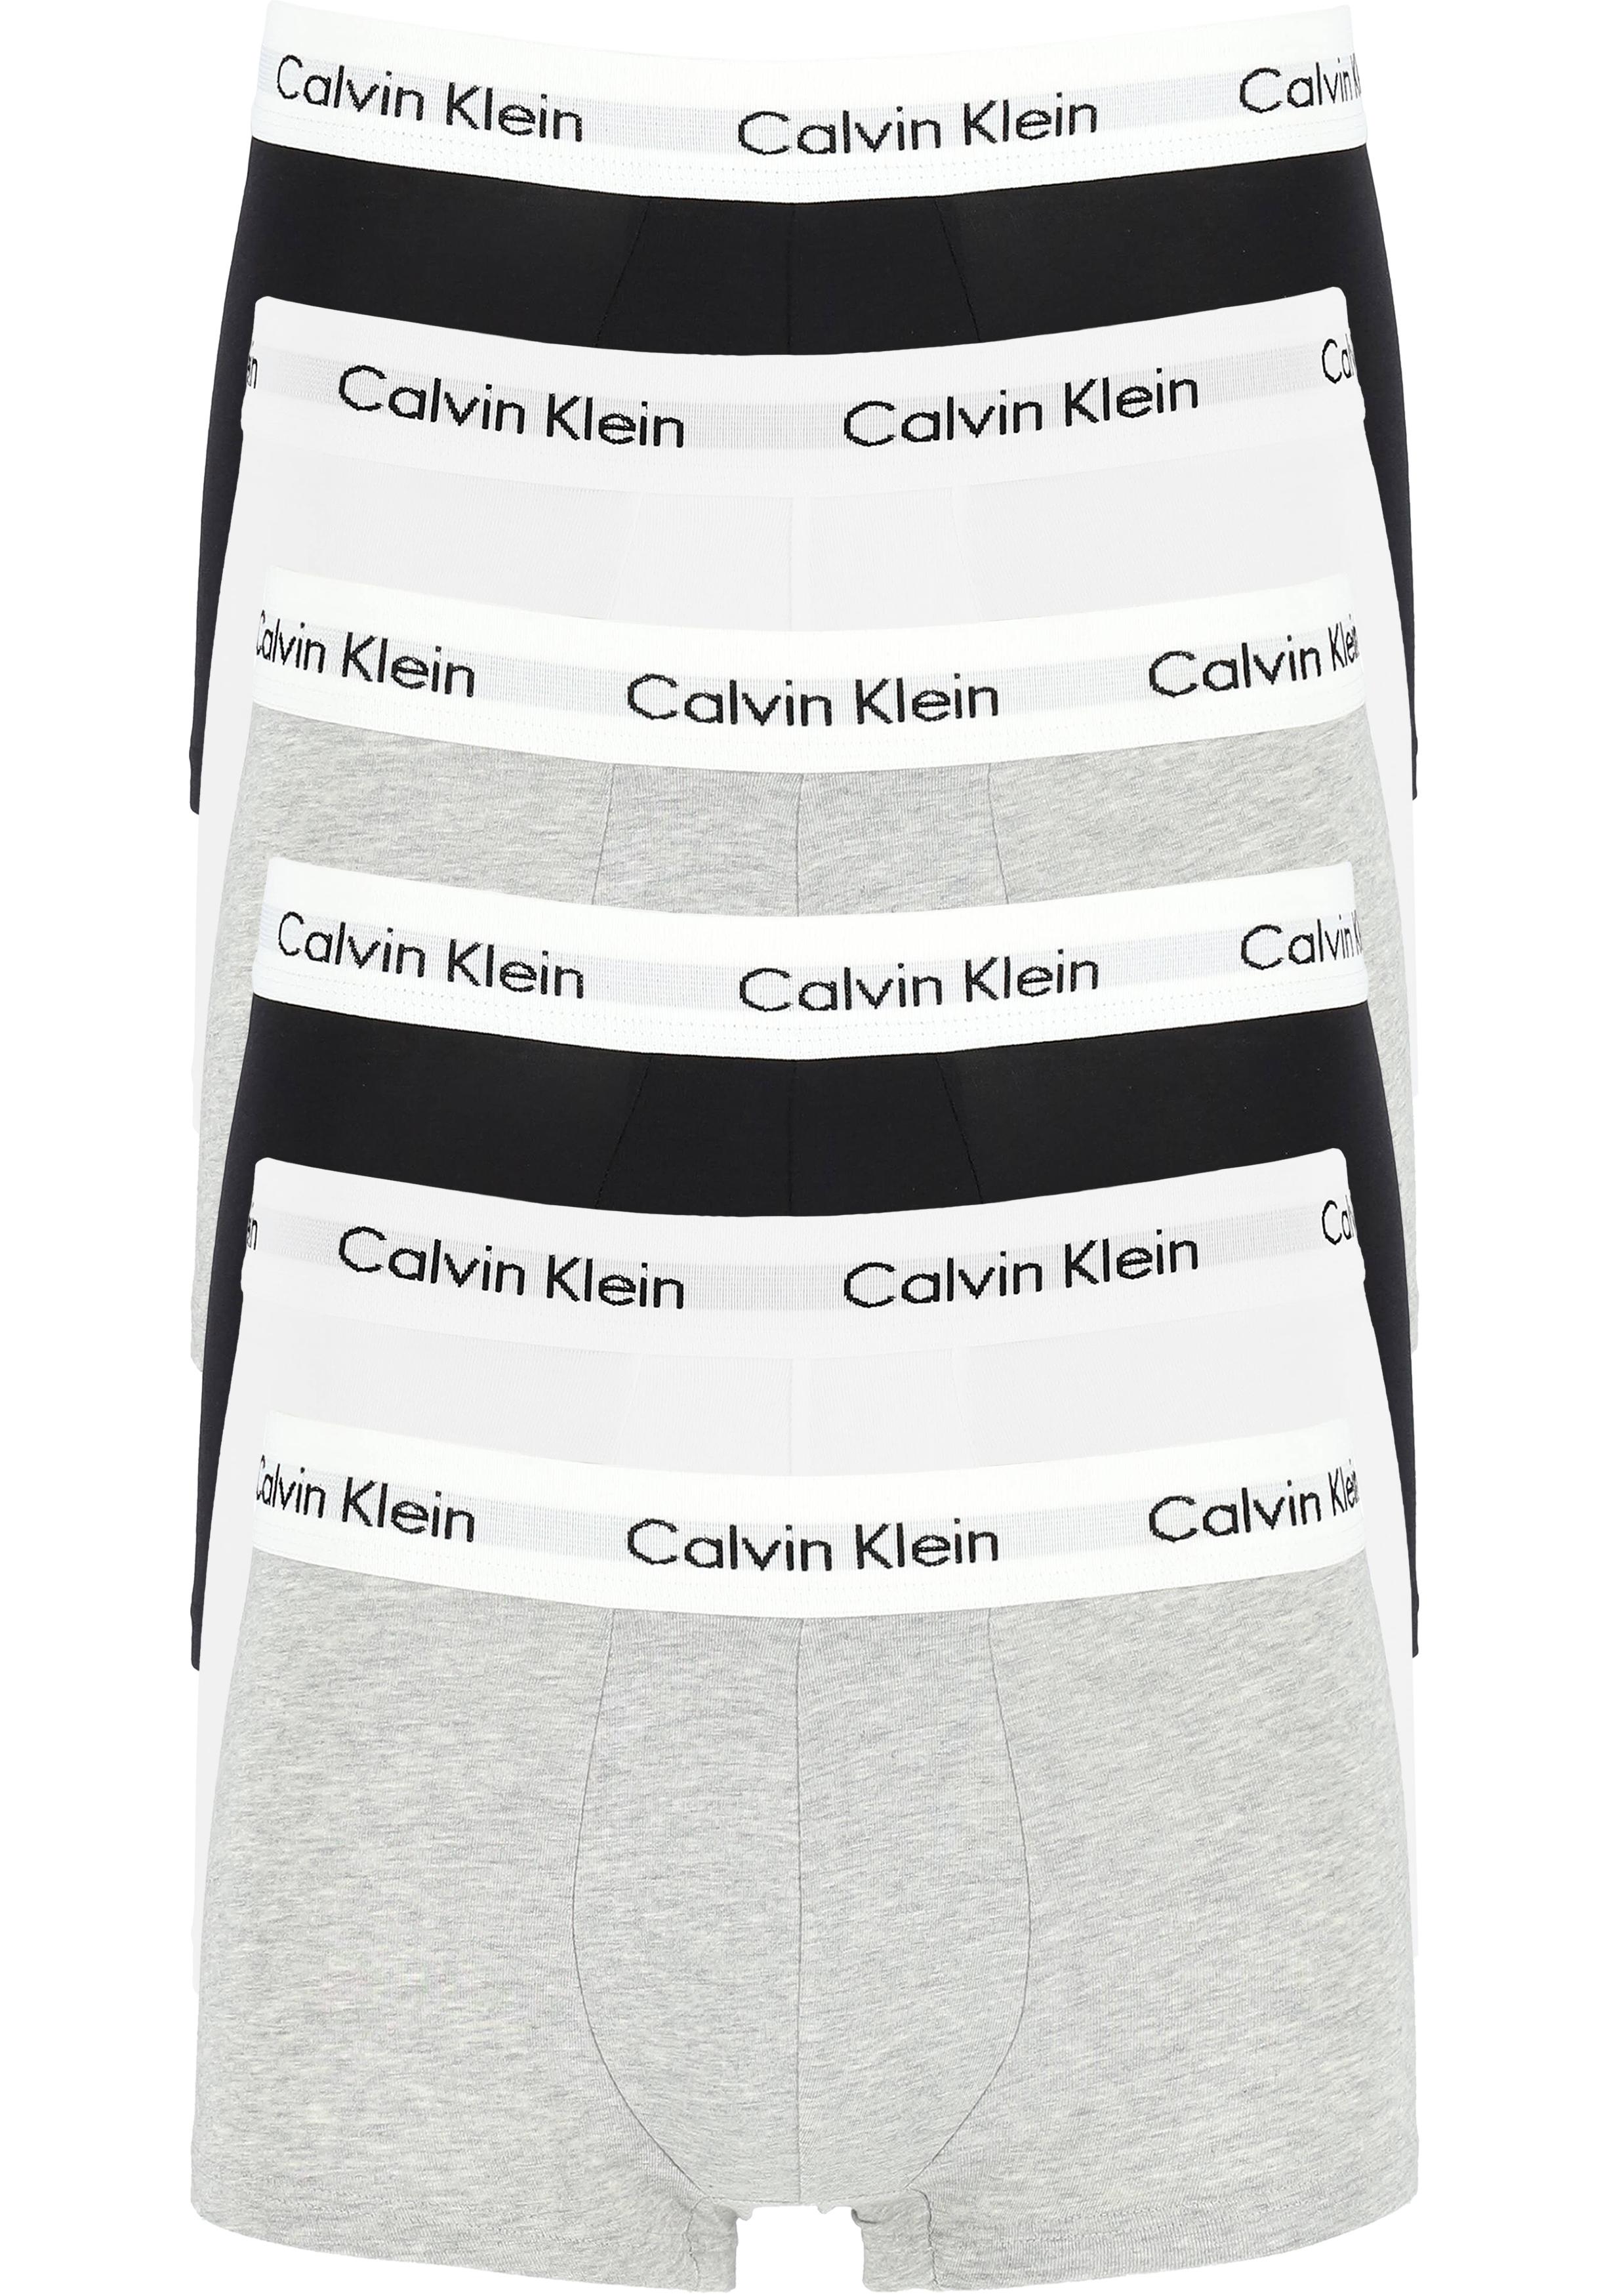 invoeren Met bloed bevlekt congestie Actie 6-pack: Calvin Klein low rise trunks, lage heren boxers kort,... -  vakantie DEALS: bestel vele artikelen van topmerken met korting